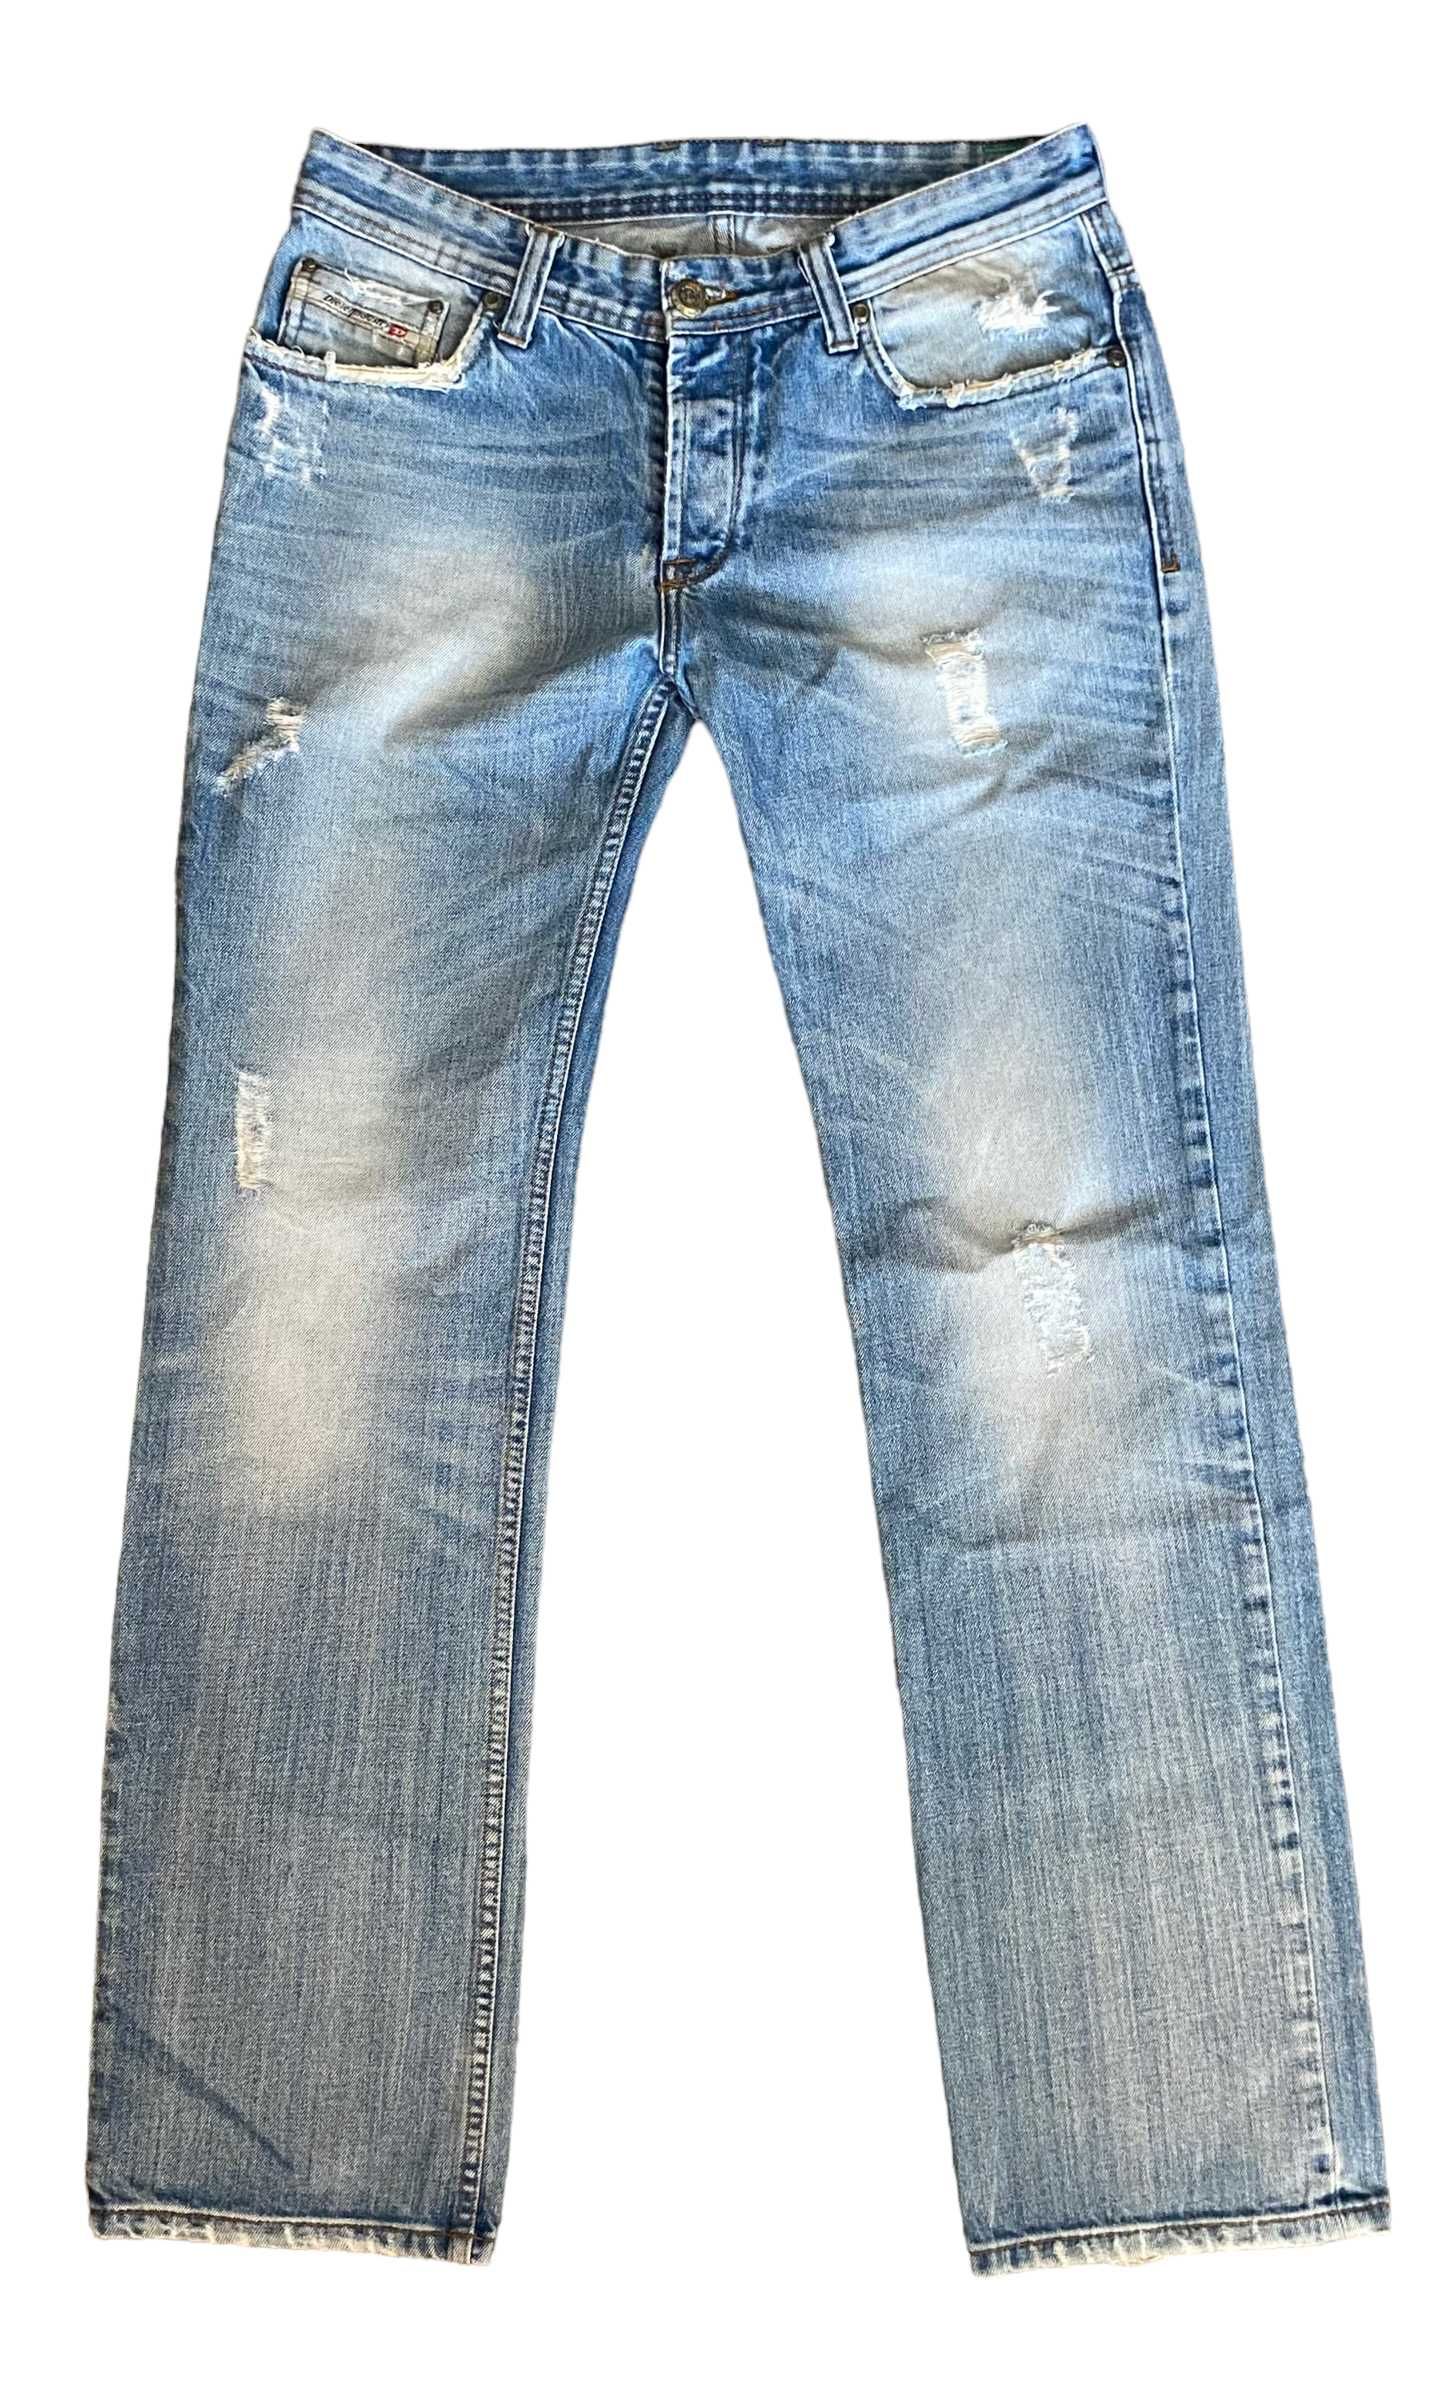 Diesel spodnie jeansowe, W32/L32, stan bardzo dobry